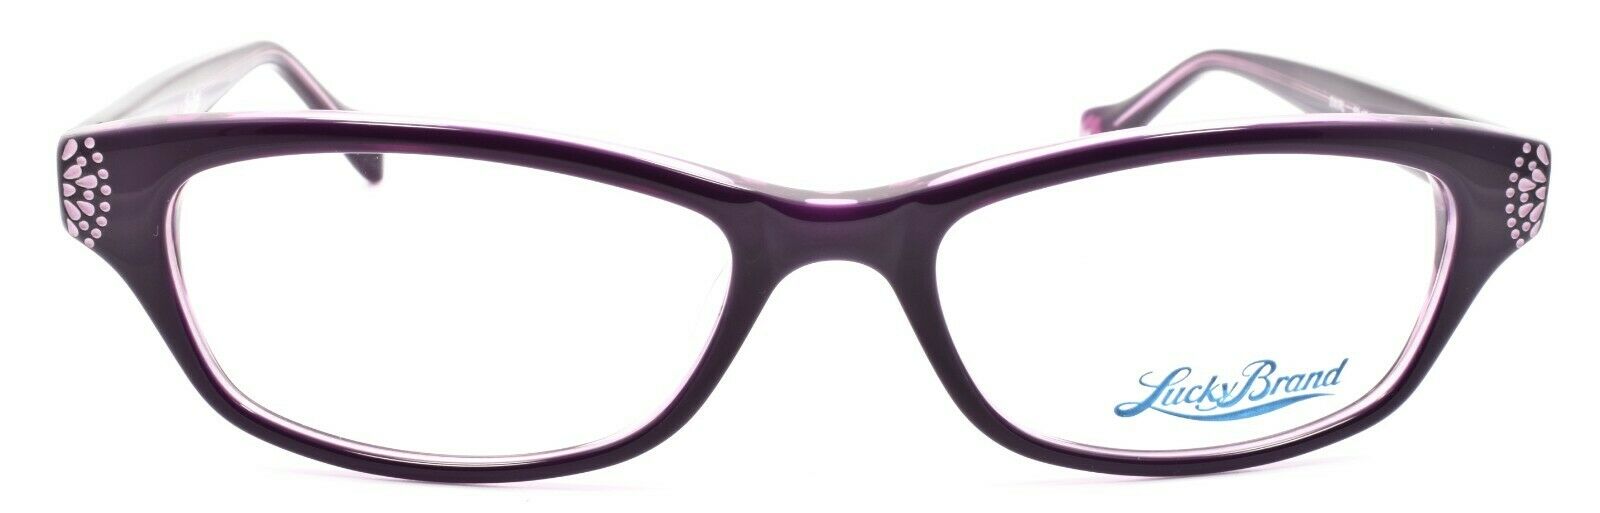 2-LUCKY BRAND Swirl Women's Eyeglasses Frames 53-17-135 Purple + CASE-751286267907-IKSpecs